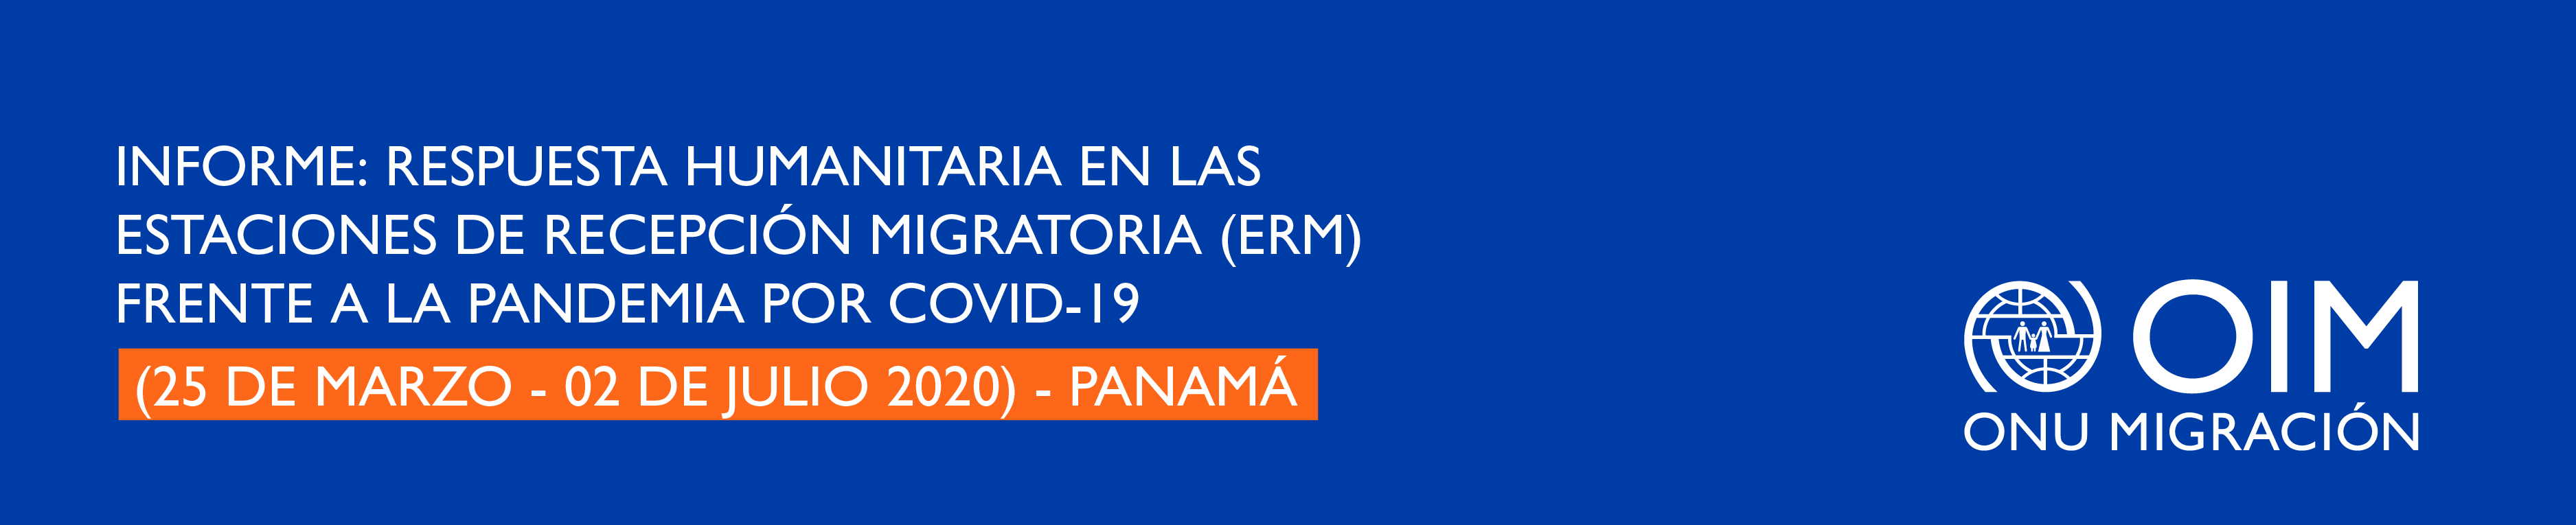 Informe: Respuesta Humanitaria en las Estaciones de Recepción Migratoria (ERM) frente a la pandemia por COVID-19 (25 de marzo - 02 de julio 2020) - Panamá